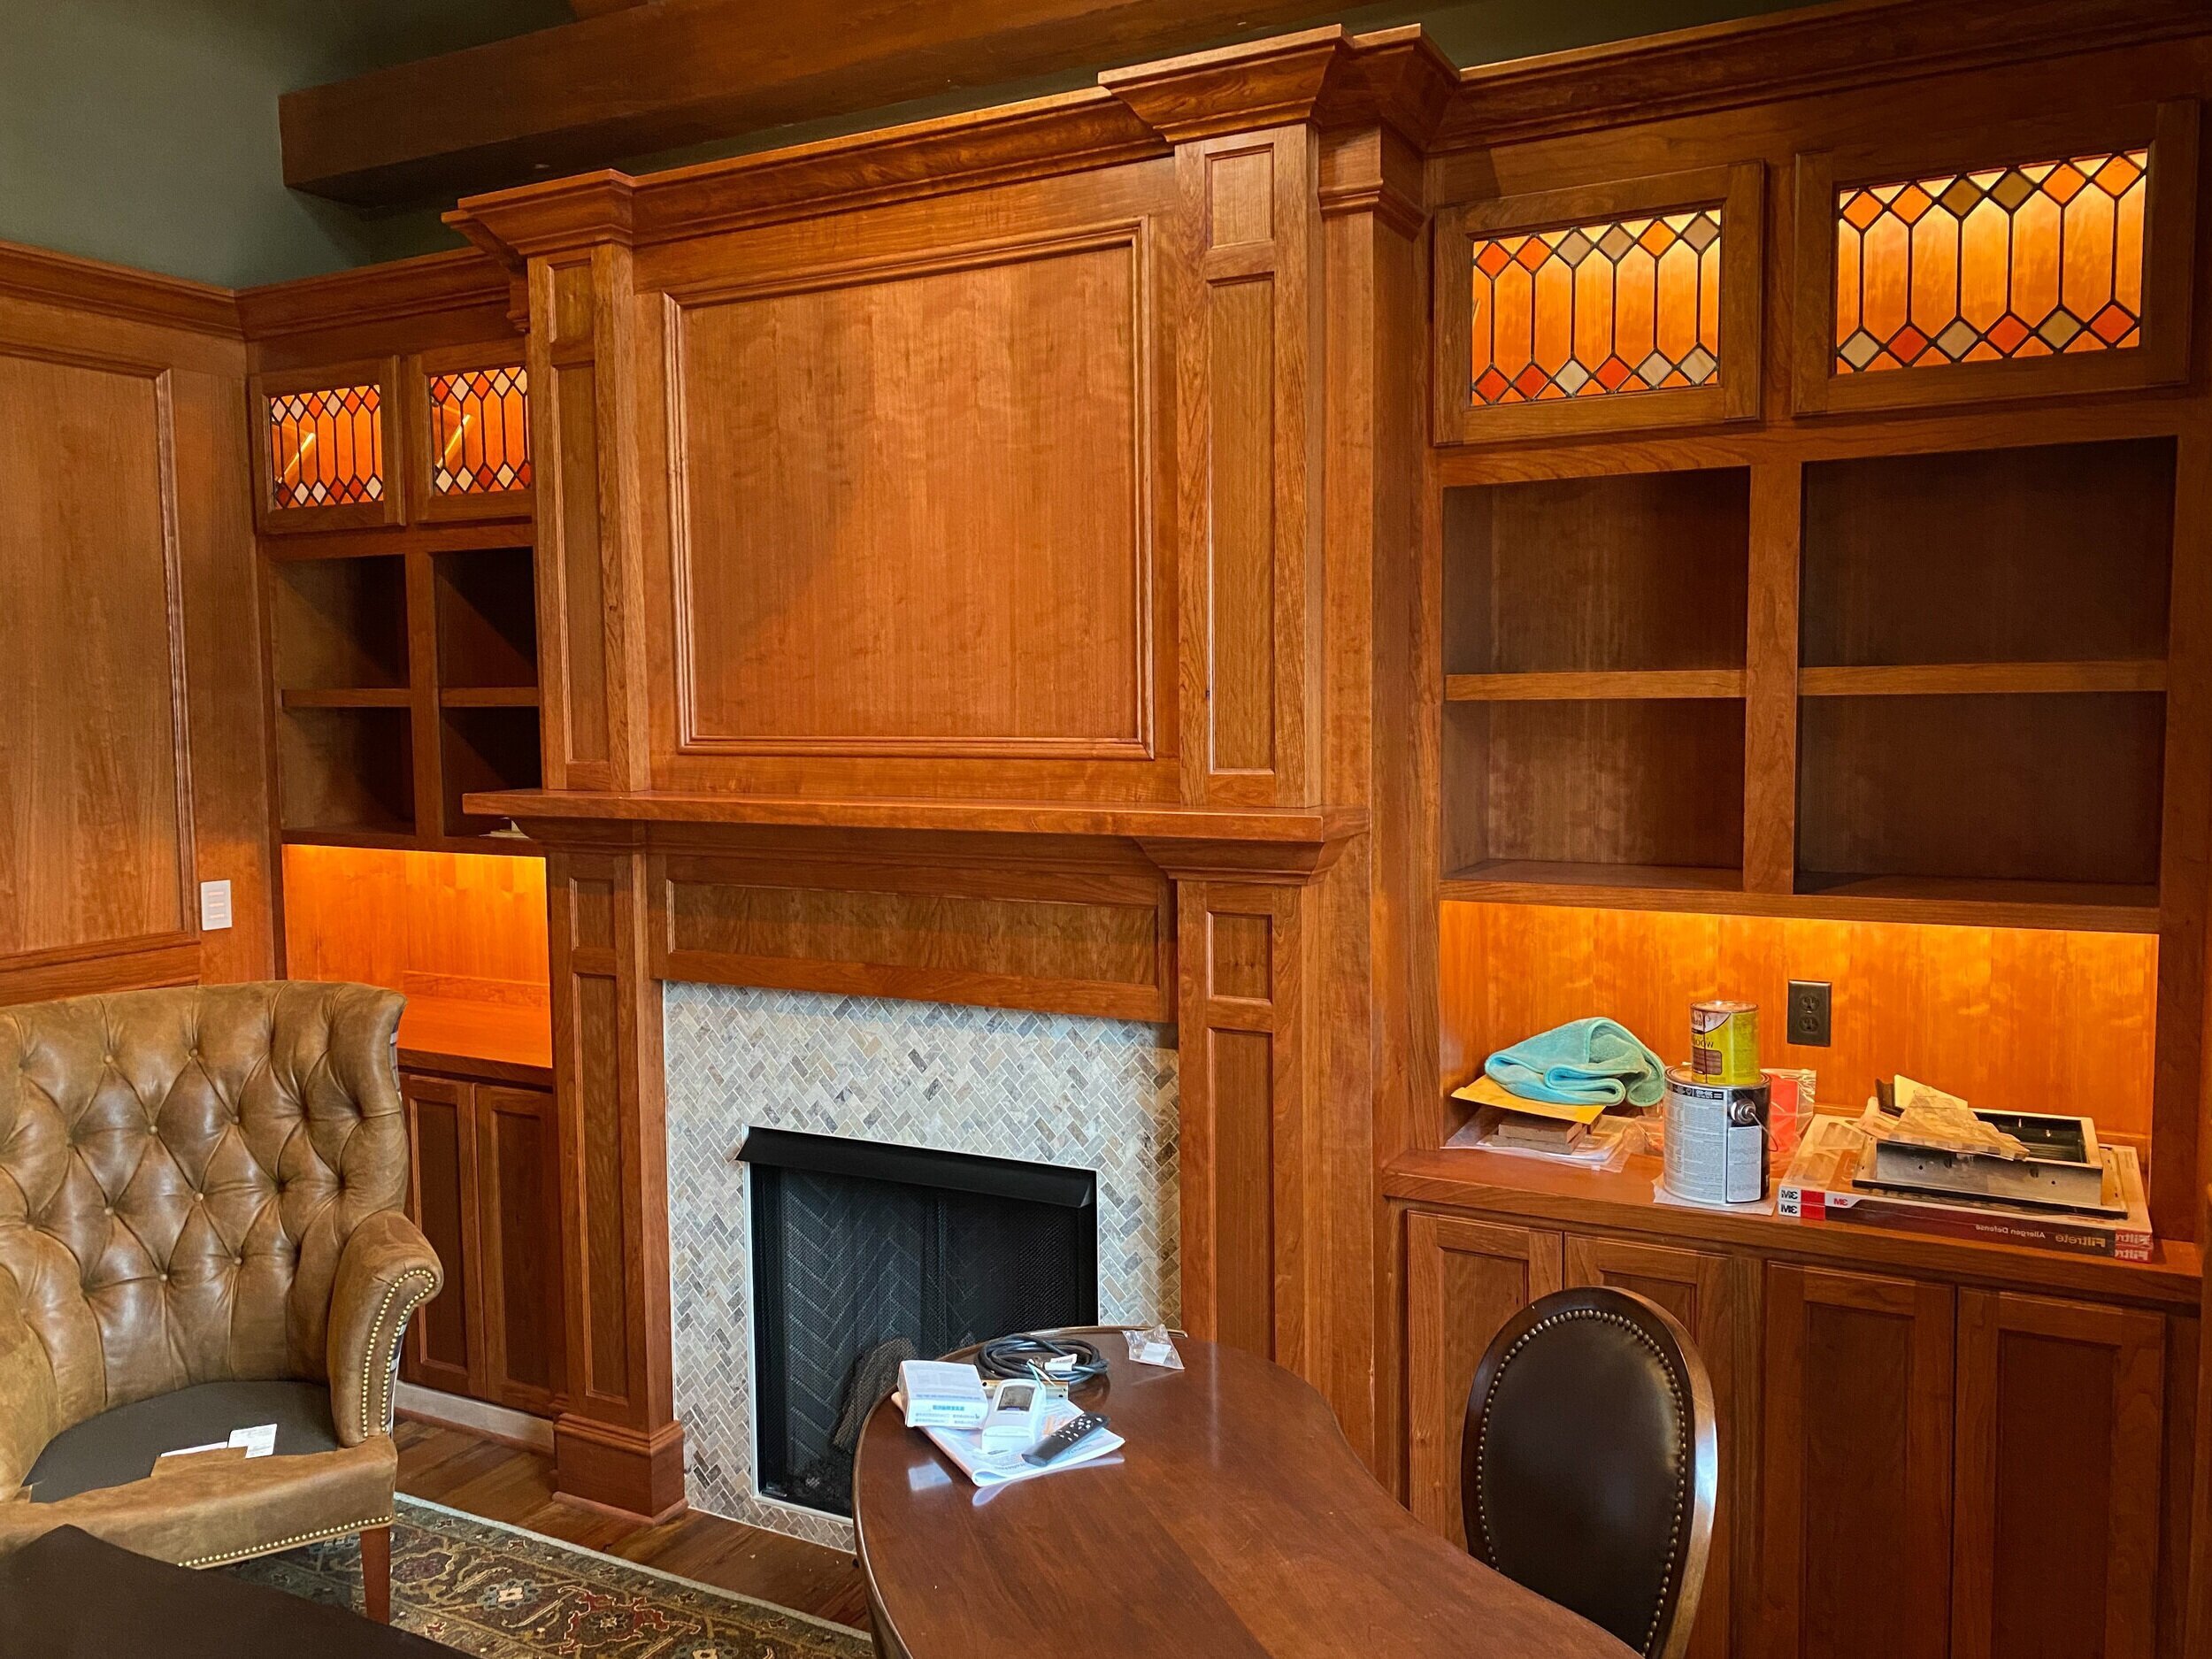 chimenea estilo shaker en tonos miel y muebles empotrados con vidrieras en los gabinetes superiores